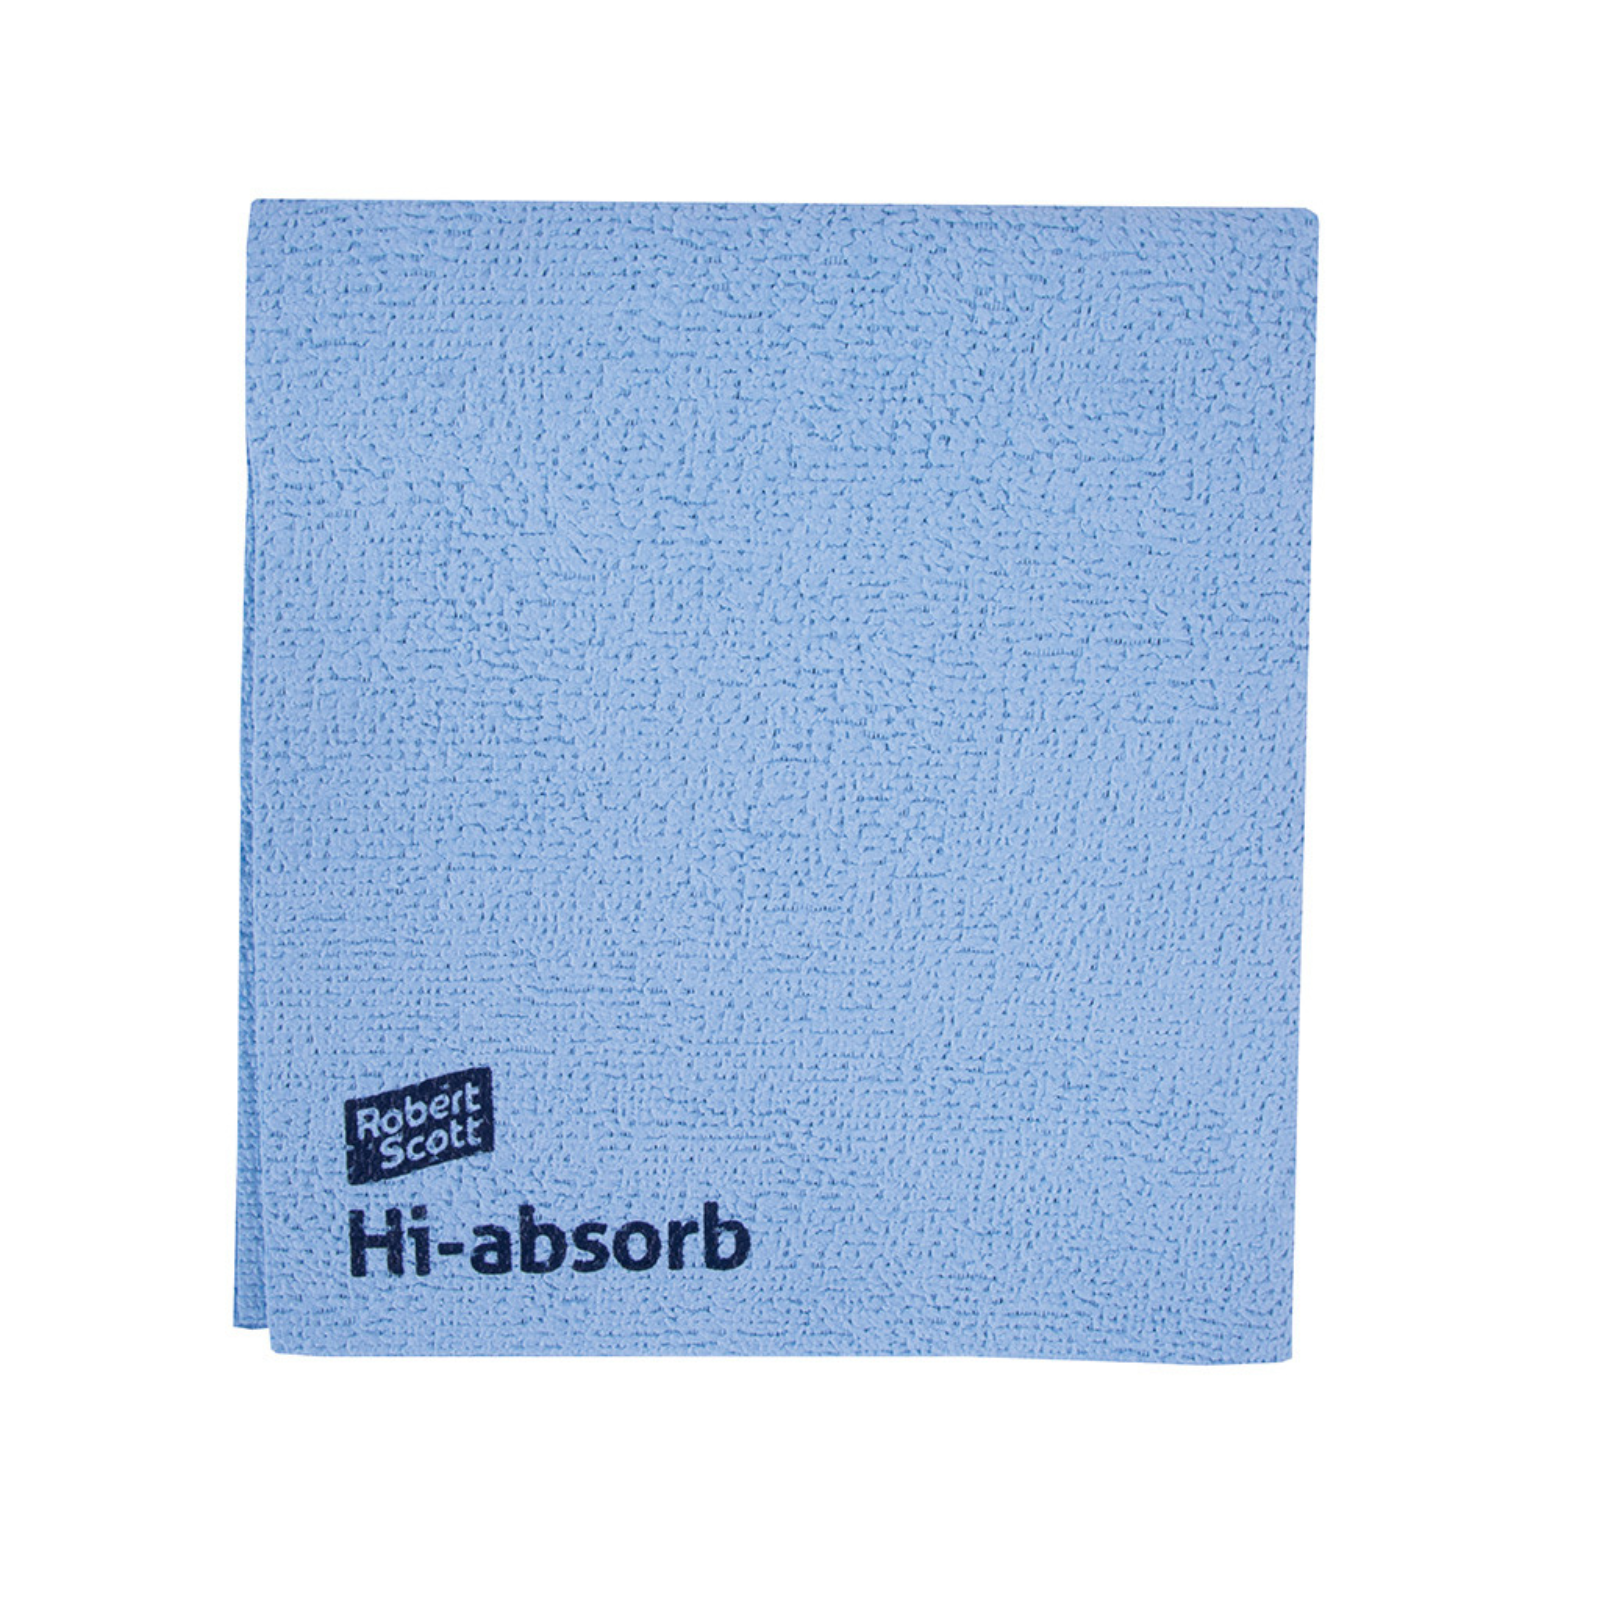 Hi-absorb Microfibre Cloth - Blue